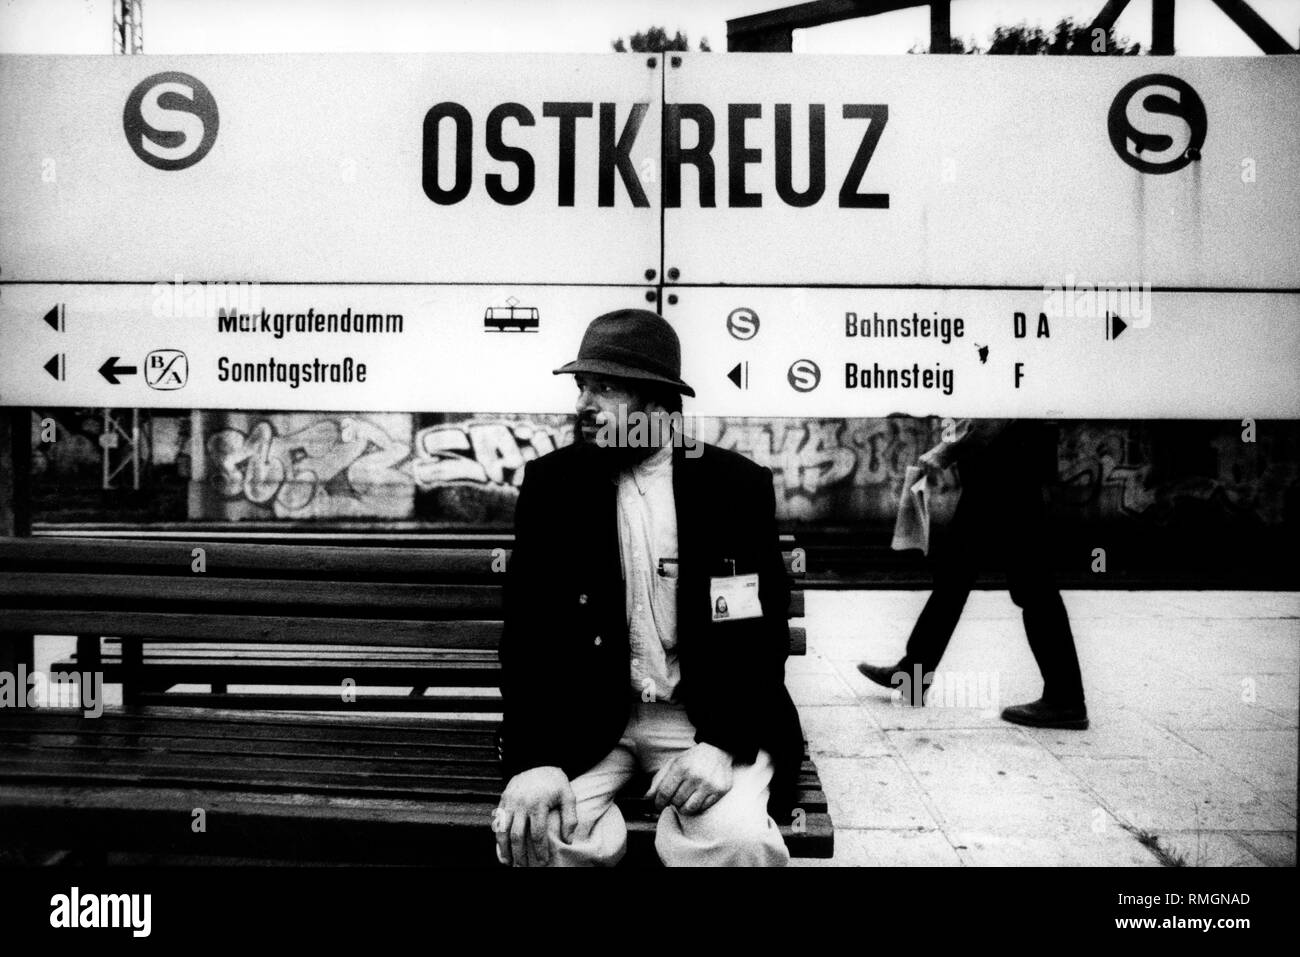 Passager en attente à la station de S-Bahn Ostkreuz. Banque D'Images